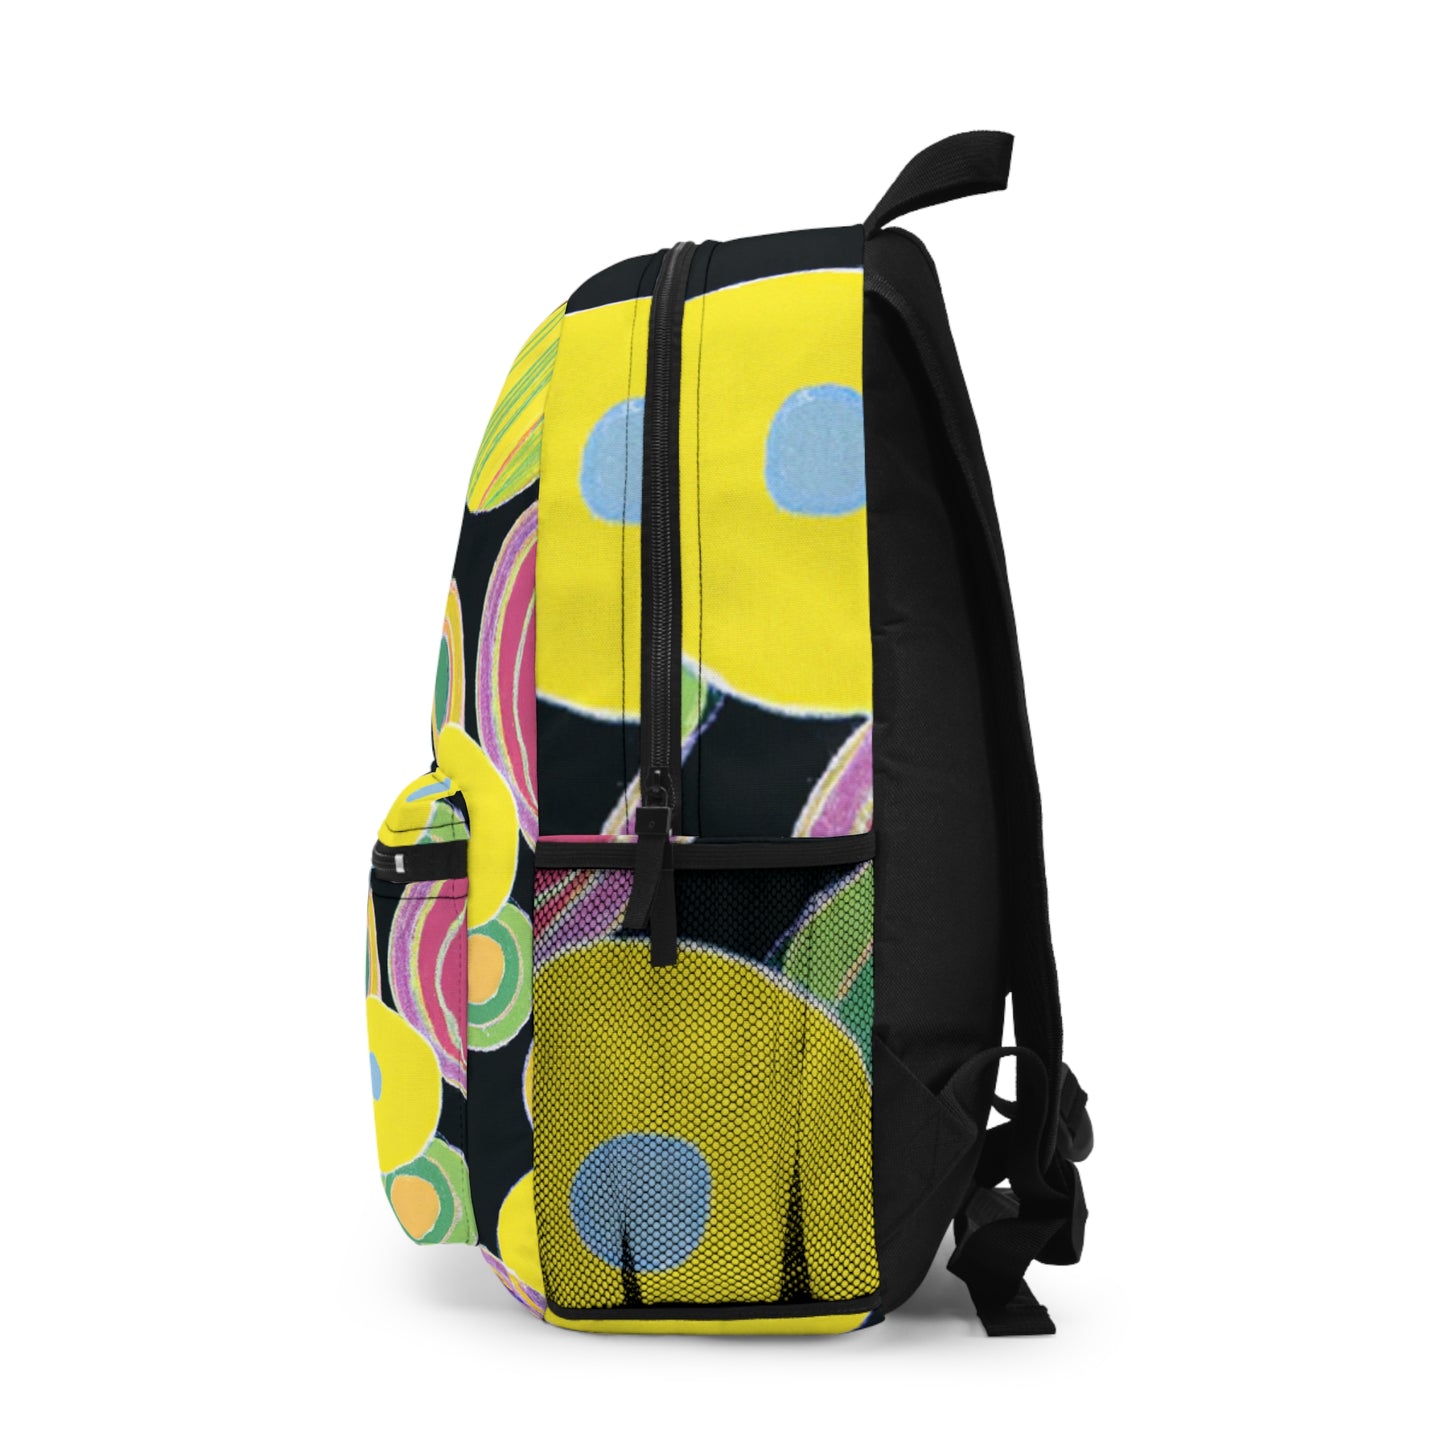 Genna Grande Backpack